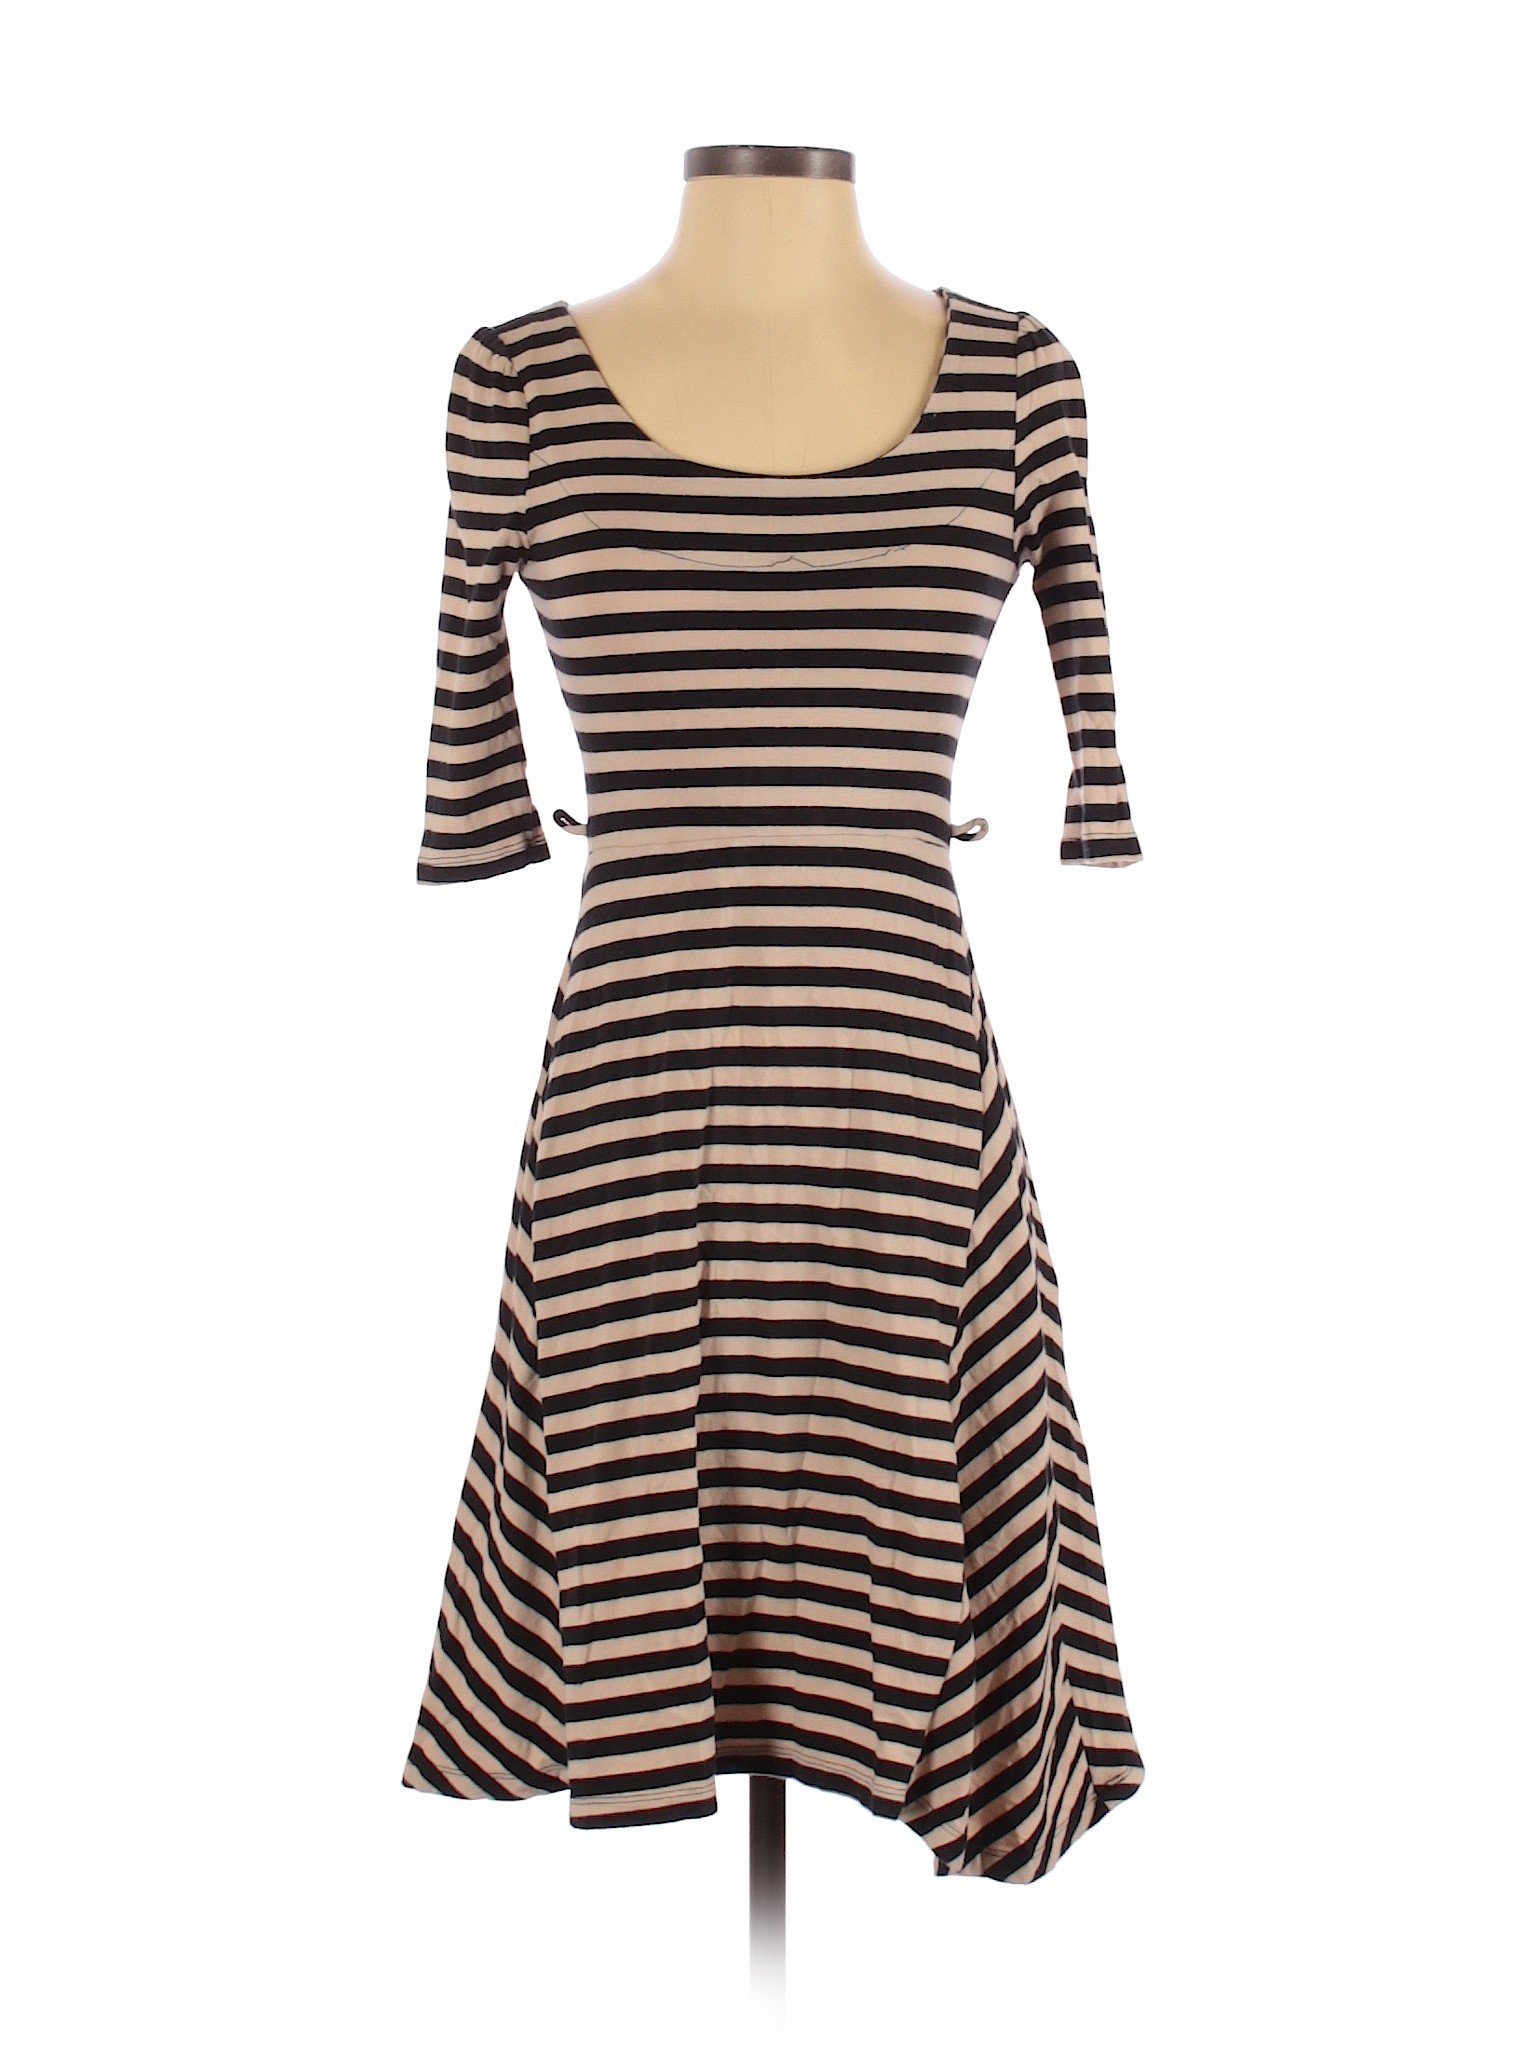 Monteau Women Brown Casual Dress S | eBay